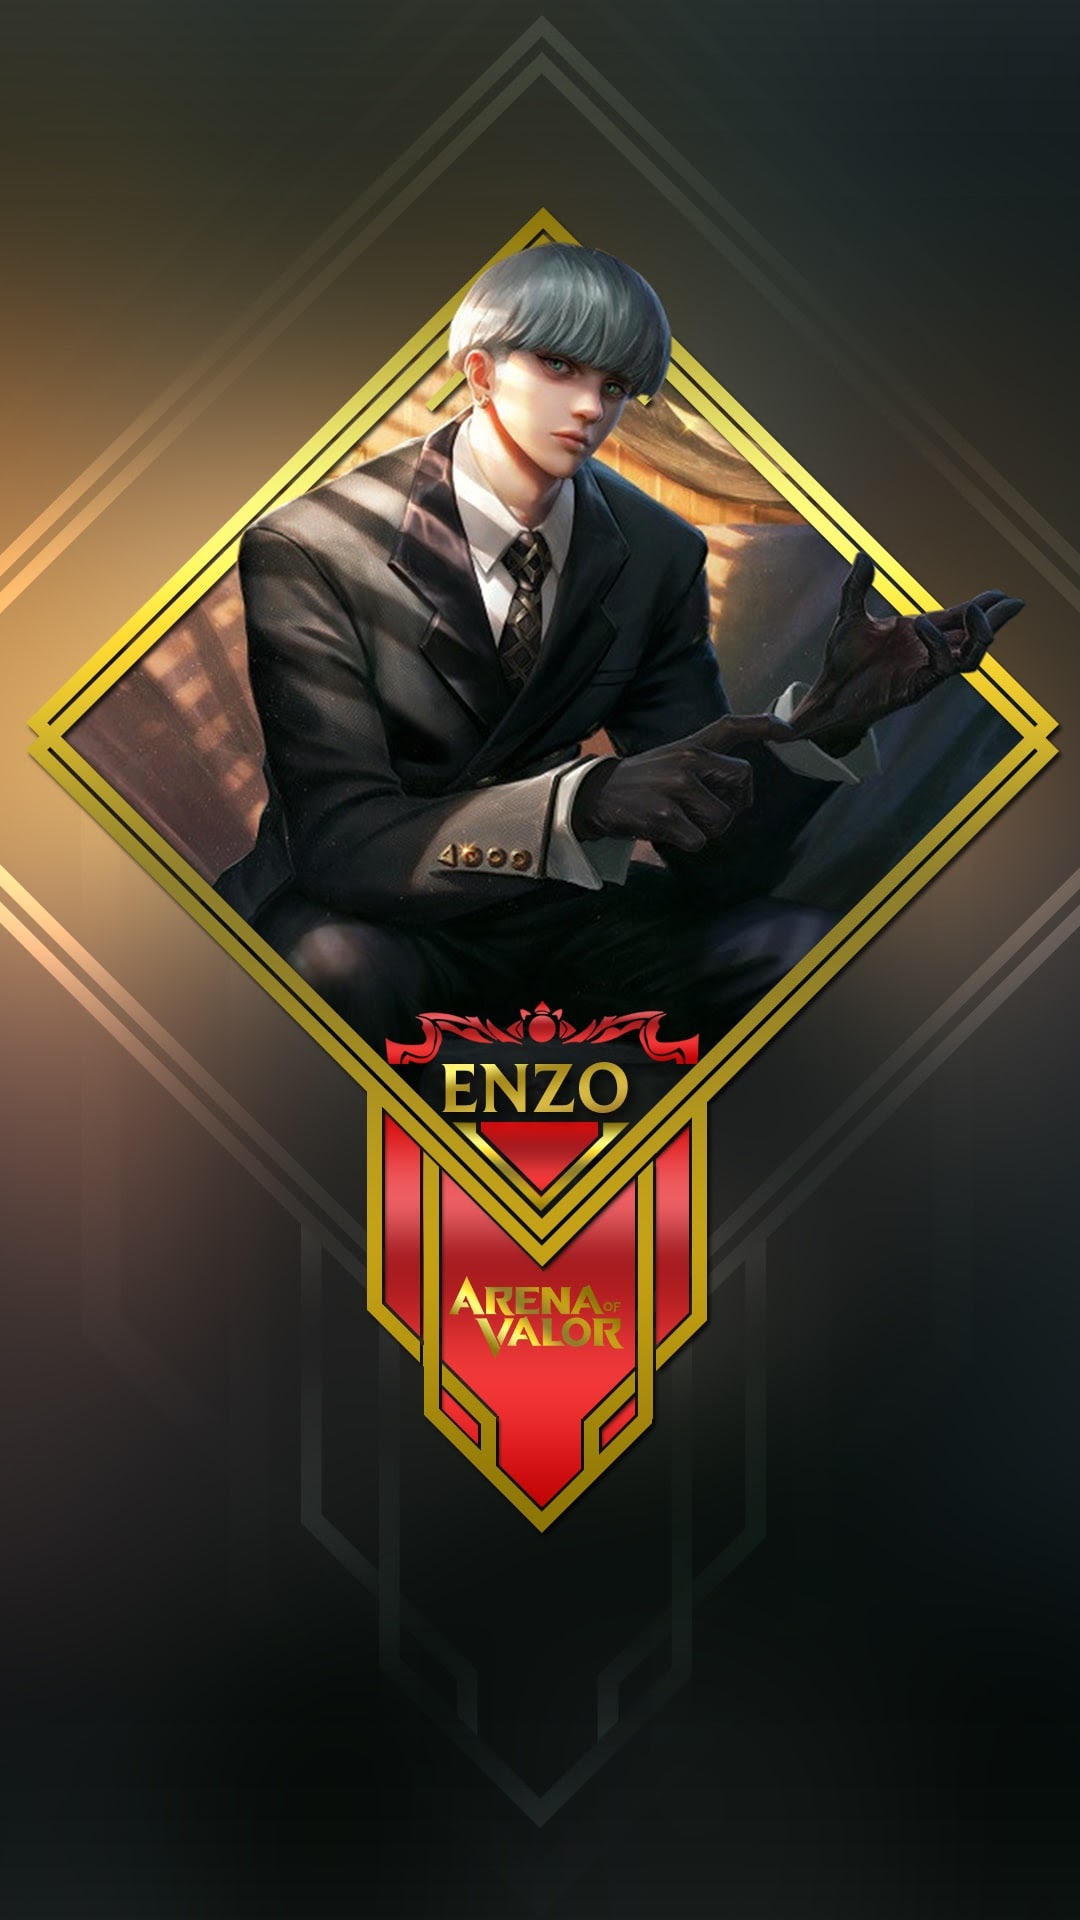 Enzo Liên Quân Mobile hoàn toàn sẽ mang đến cho bạn một trải nghiệm chơi game tốt nhất và đầy hứng khởi. Với Enzo trong game, bạn sẽ cảm thấy chính mình đang dẫn đầu với tốc độ và phong cách đỉnh cao.